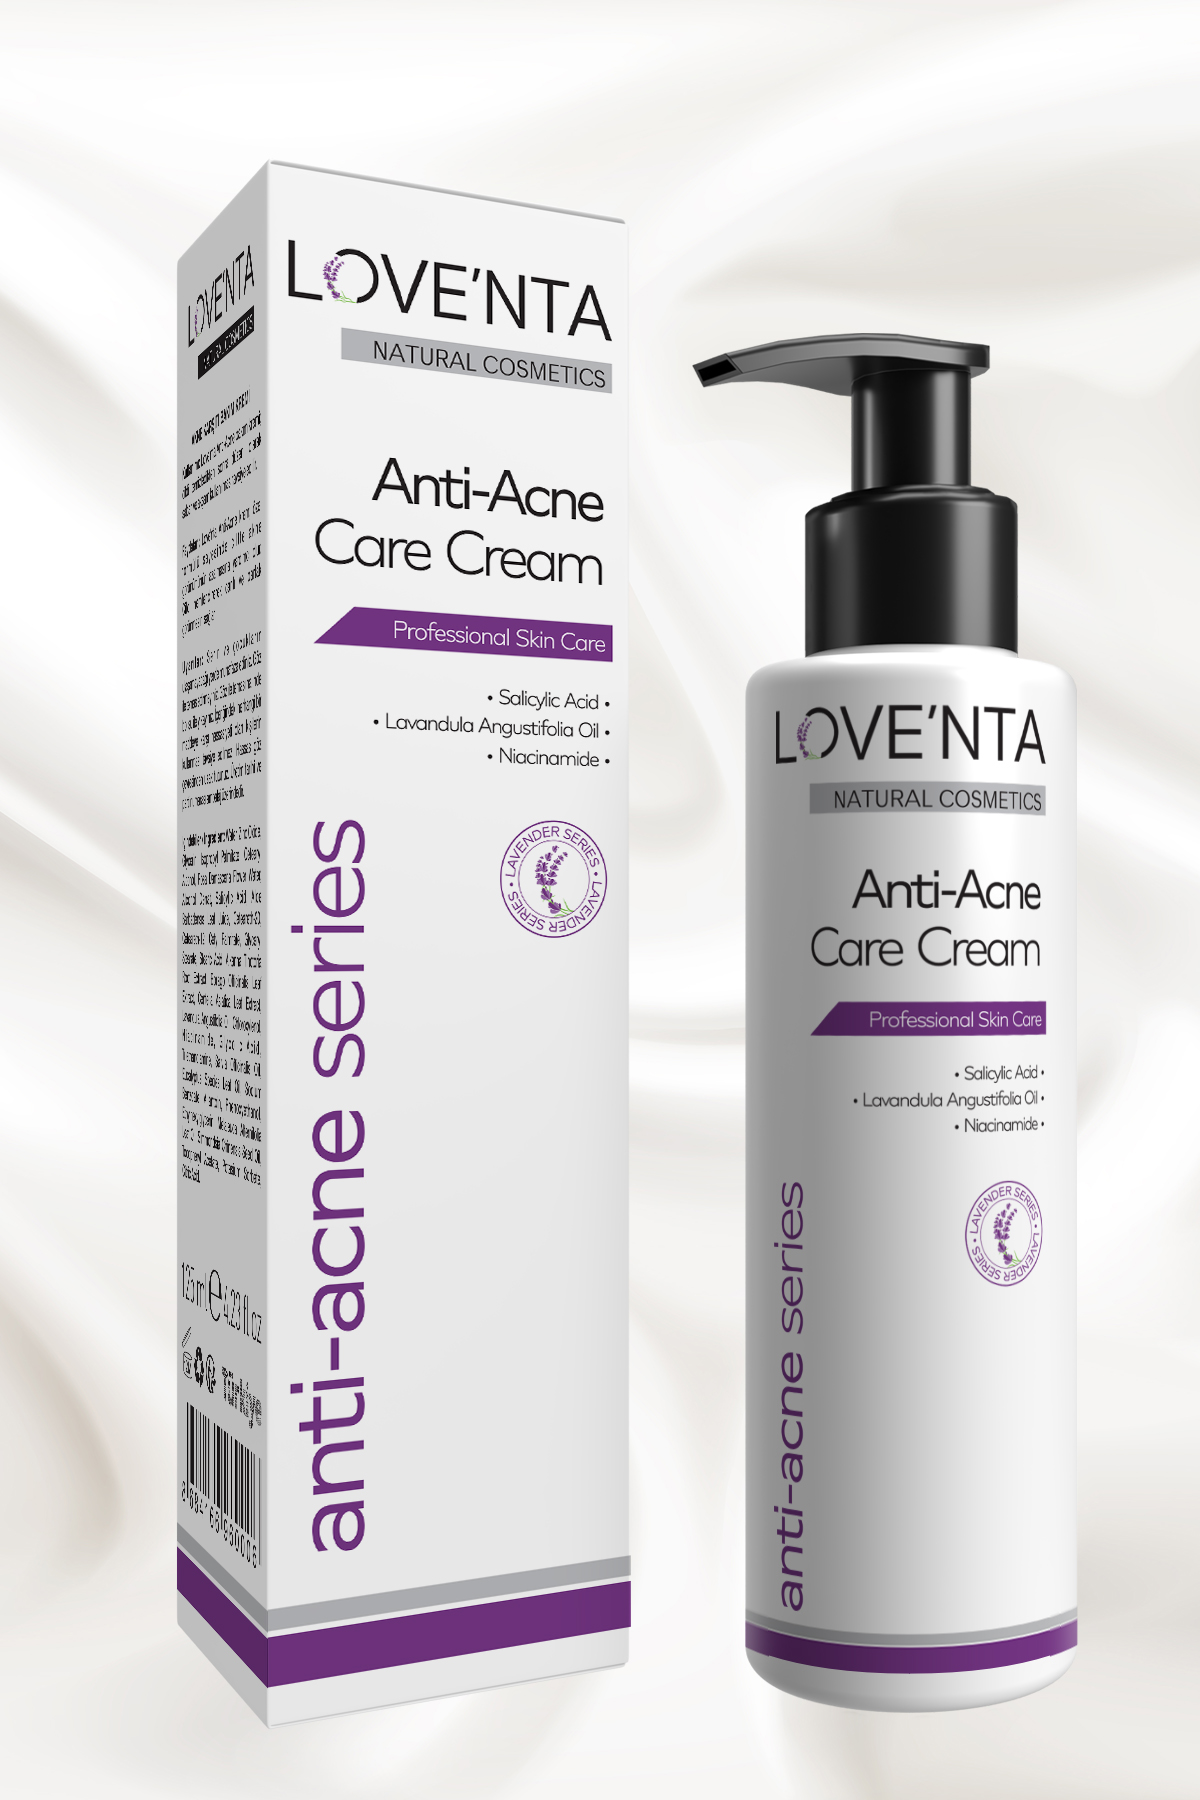 Love'nta Anti-Acne Care Cream / Lavanta Yağlı Akne Karşıtı Bakım Kremi 